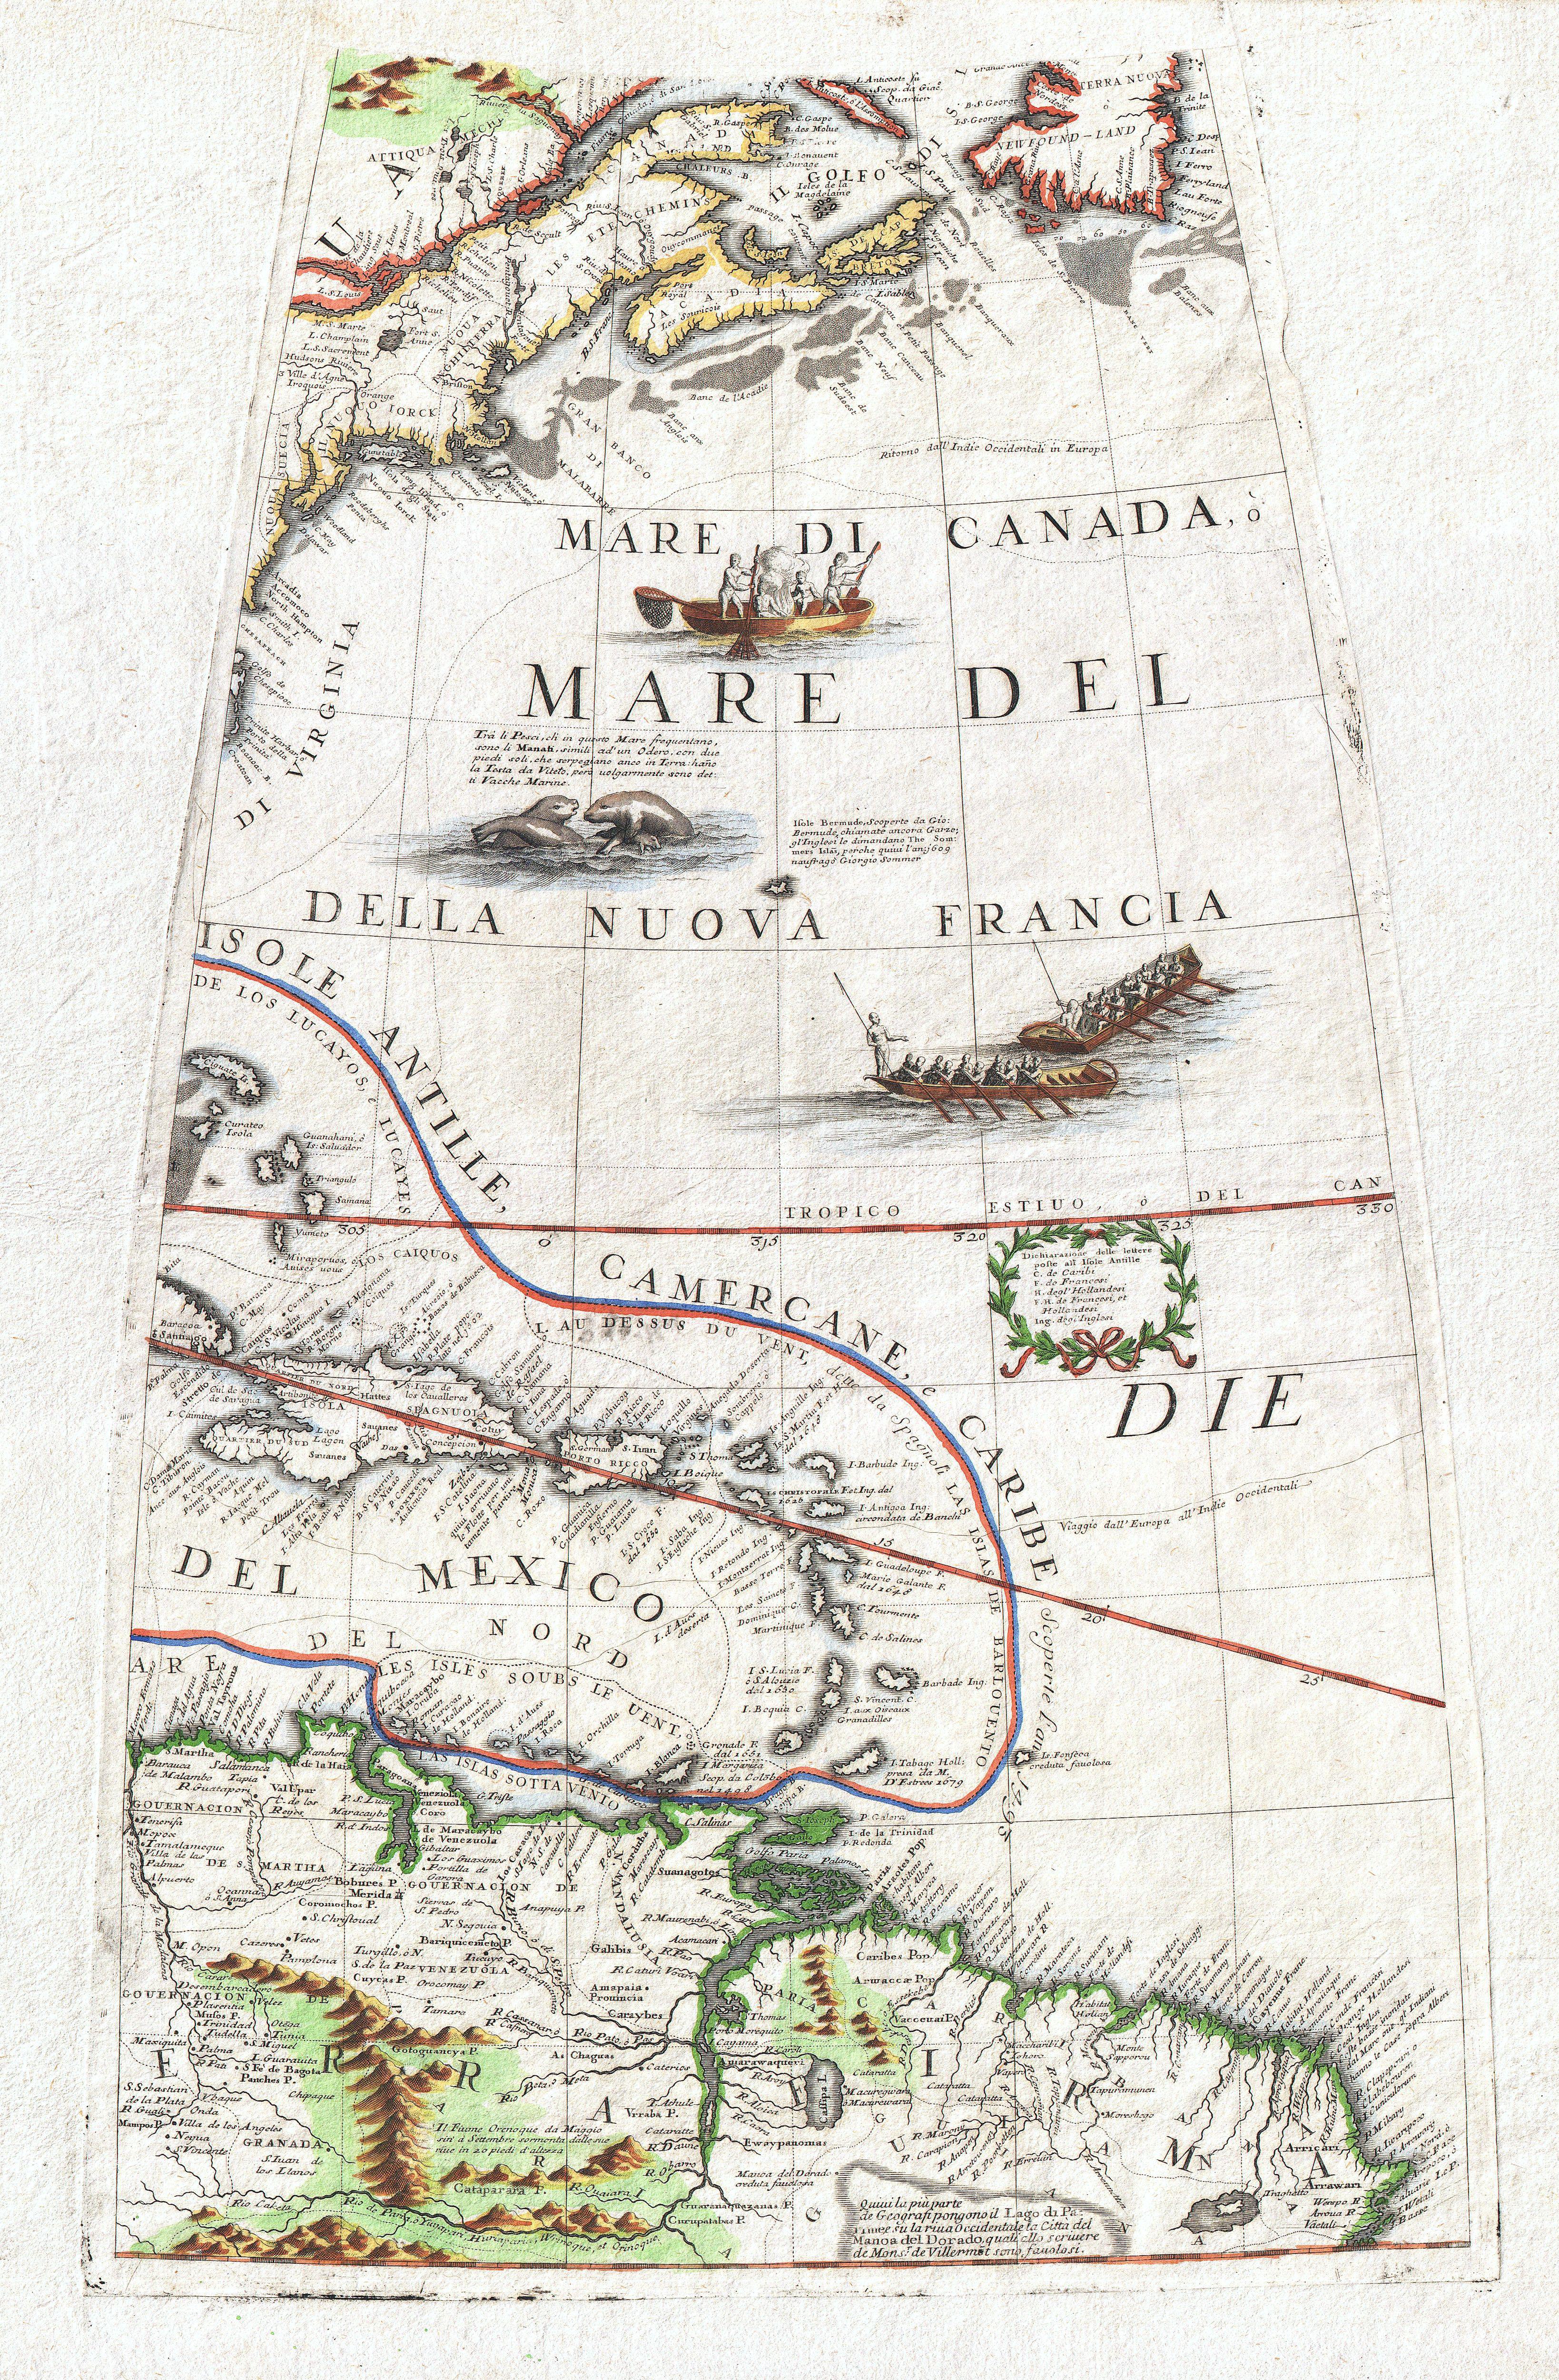 1688 Coronelli Globe Gore Map of NE North America, the West Indies, and NE South America - Geographicus - NEAmericaGore-coronelli-1688